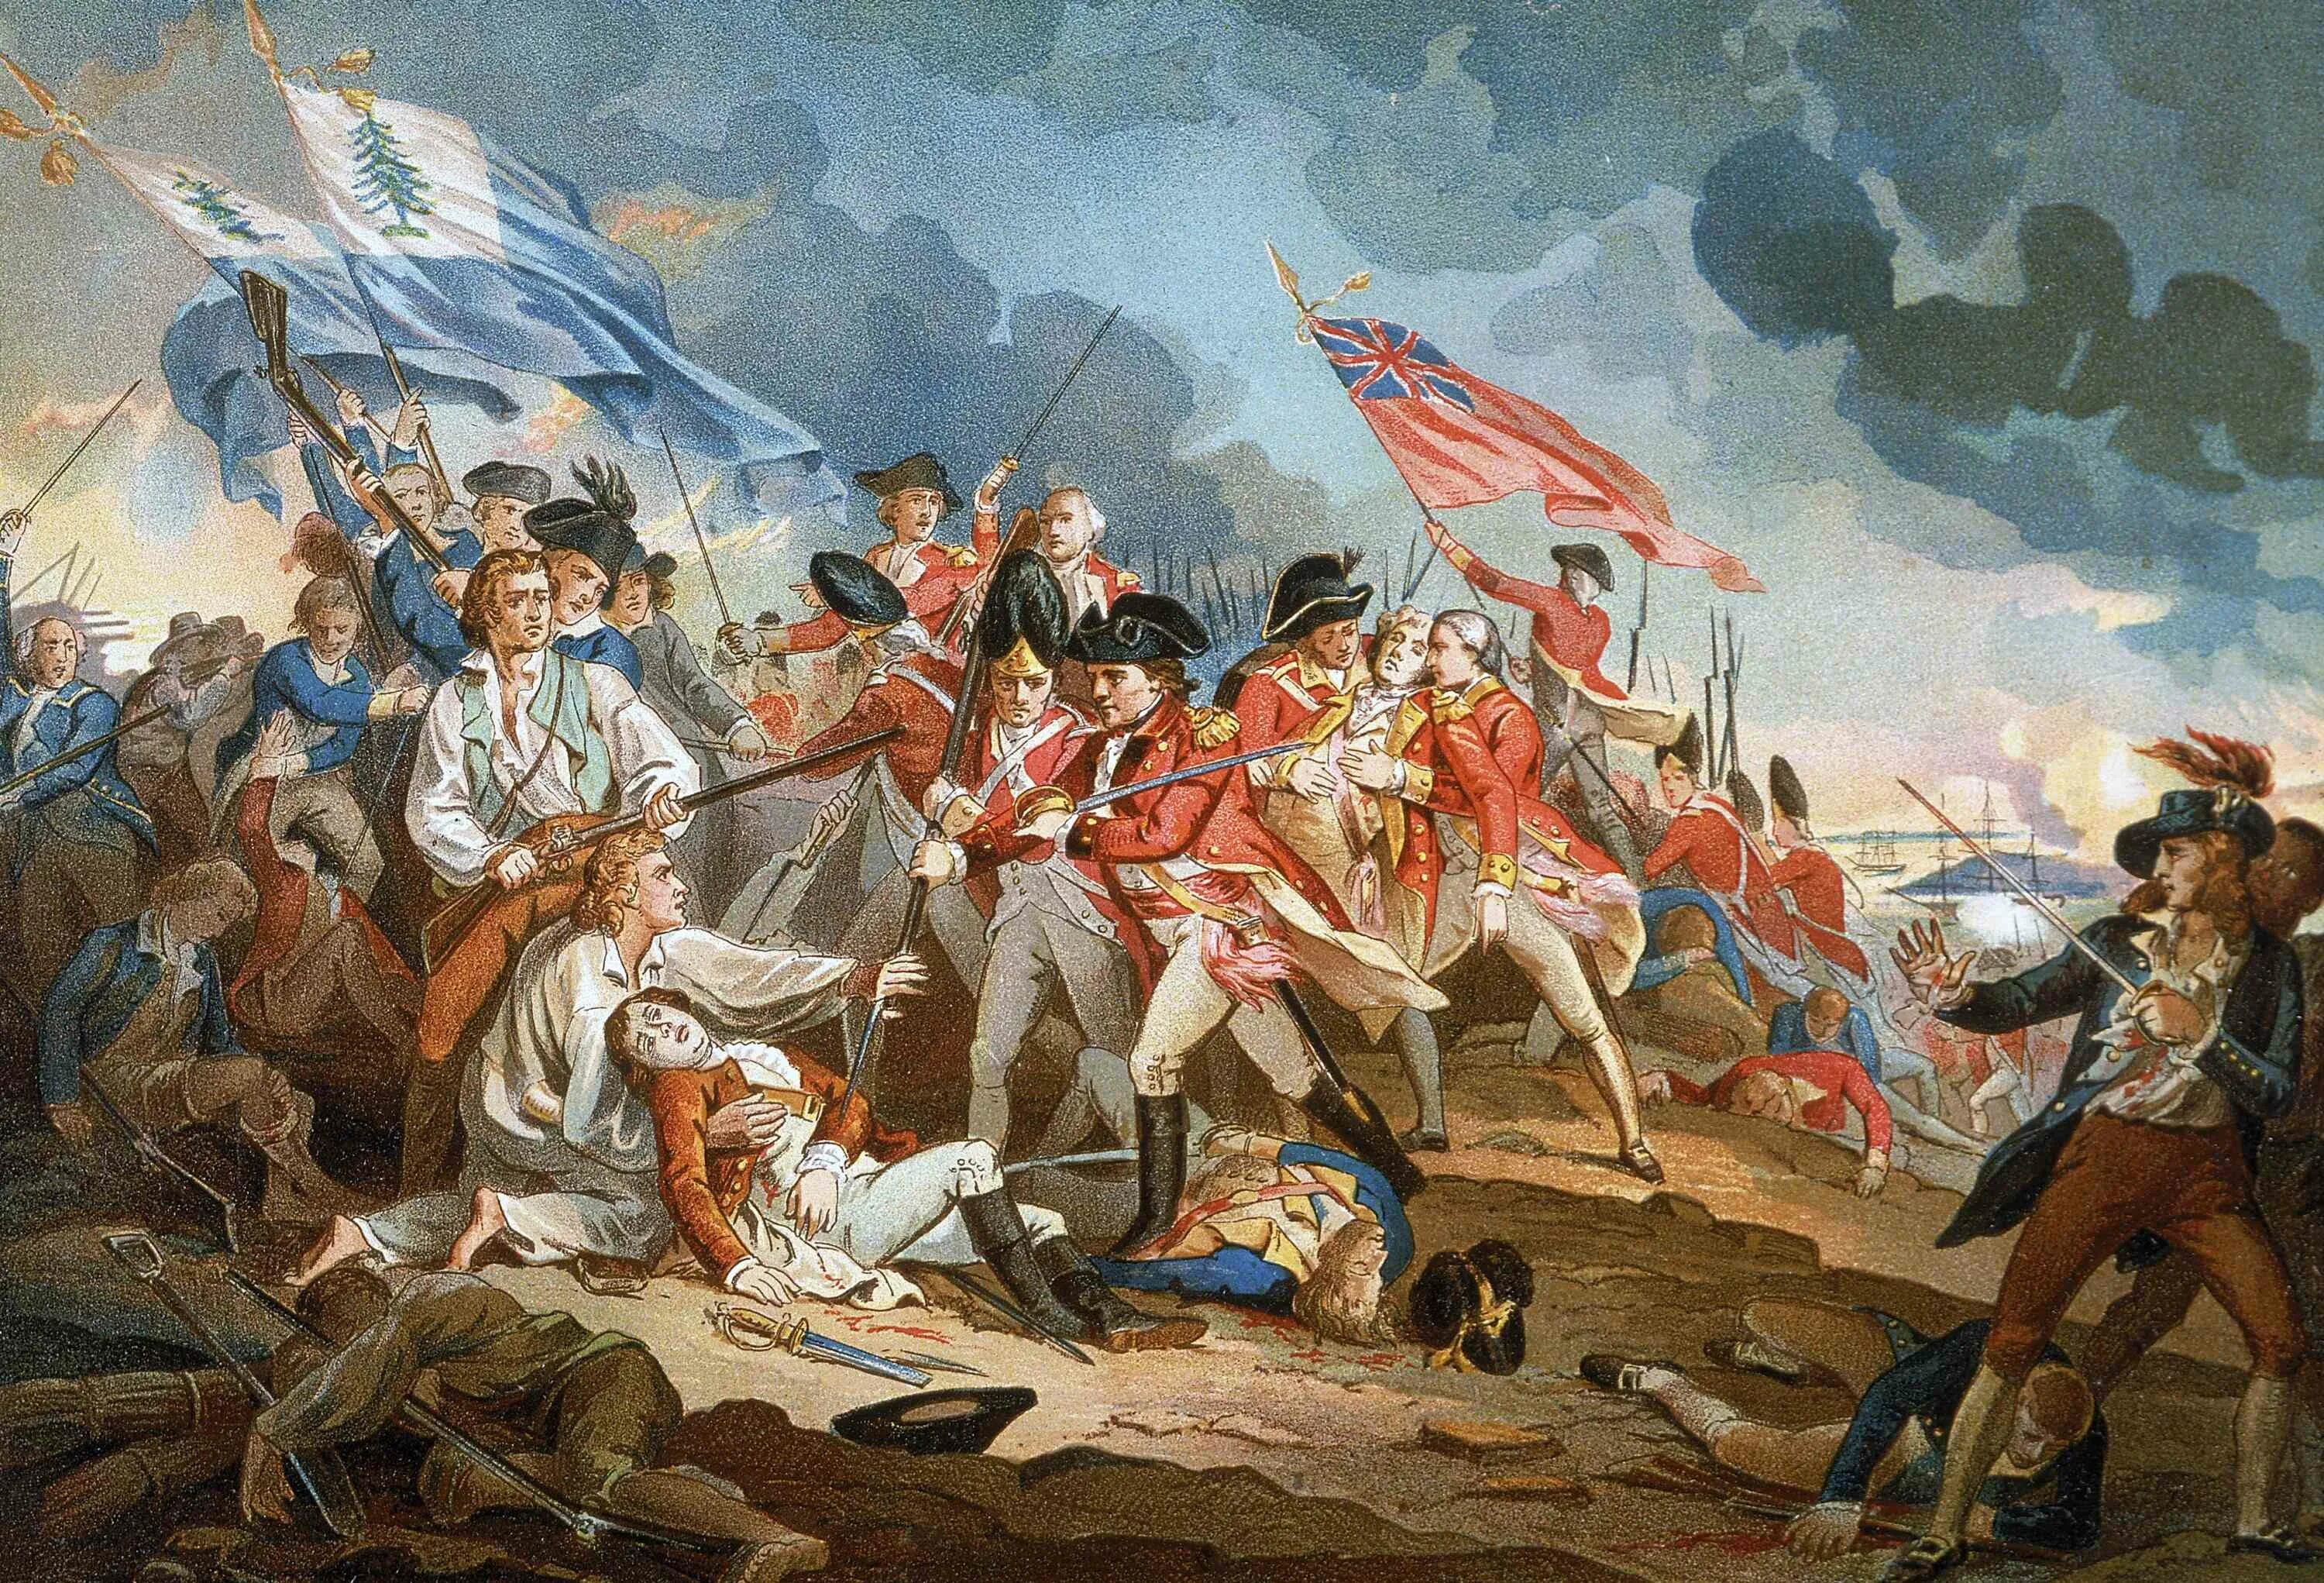 Борьба с испанией. Война за независимость США Банкер Хилл. Война за независимость США 1775-1783. Битва при Банкер-Хилле 1775. Банкер Хилл битва.